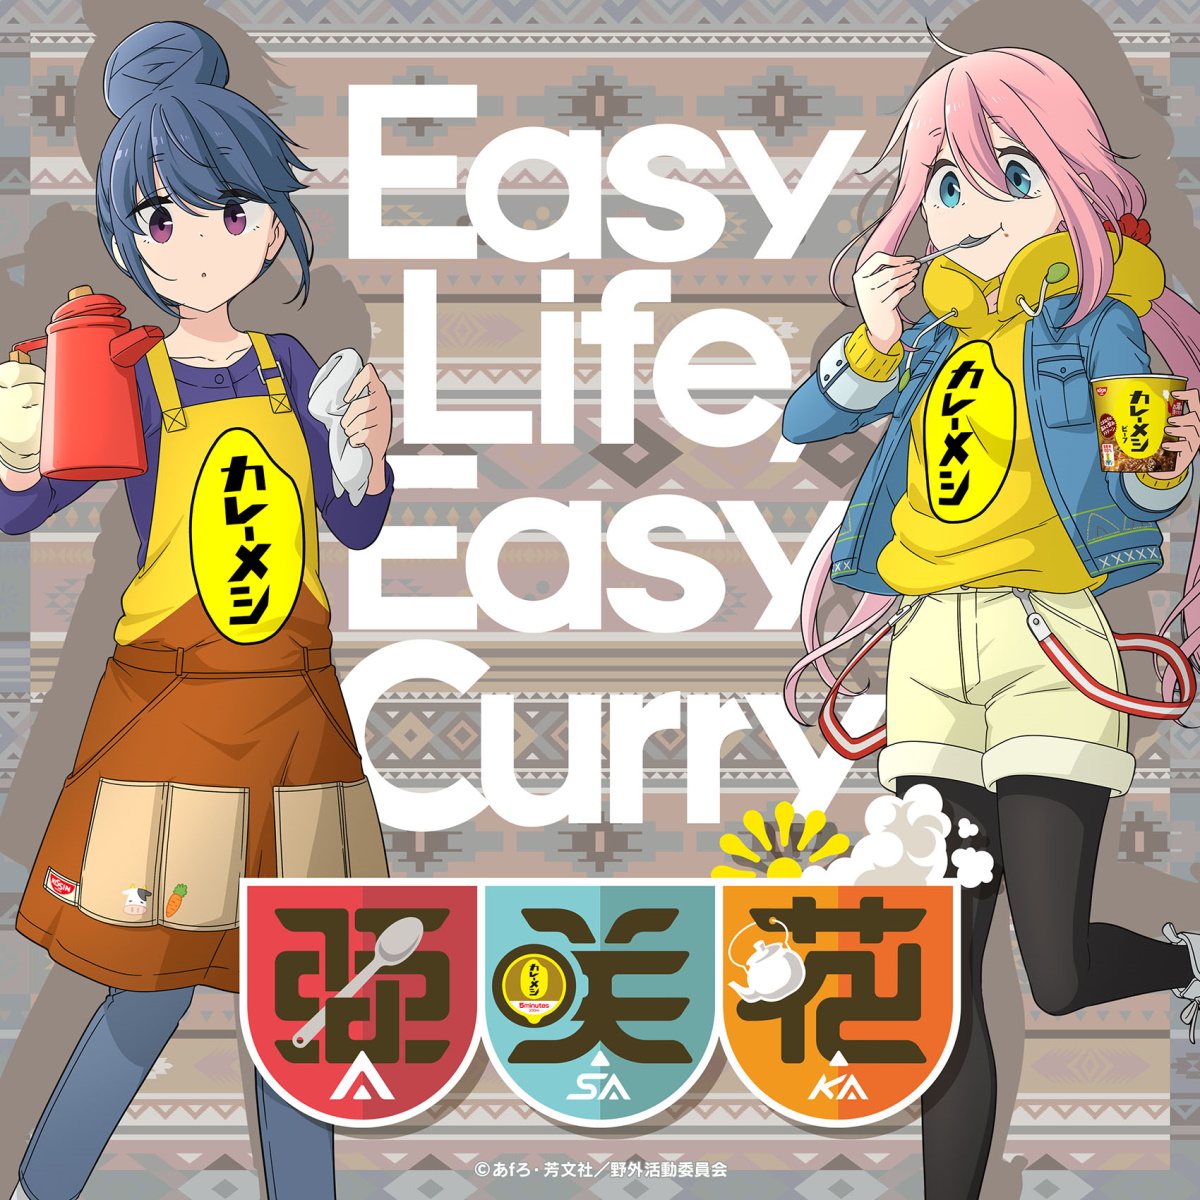 『亜咲花 - Easy Life, Easy Curry -カレーメシのうた-』収録の『Easy Life, Easy Curry -カレーメシのうた-』ジャケット